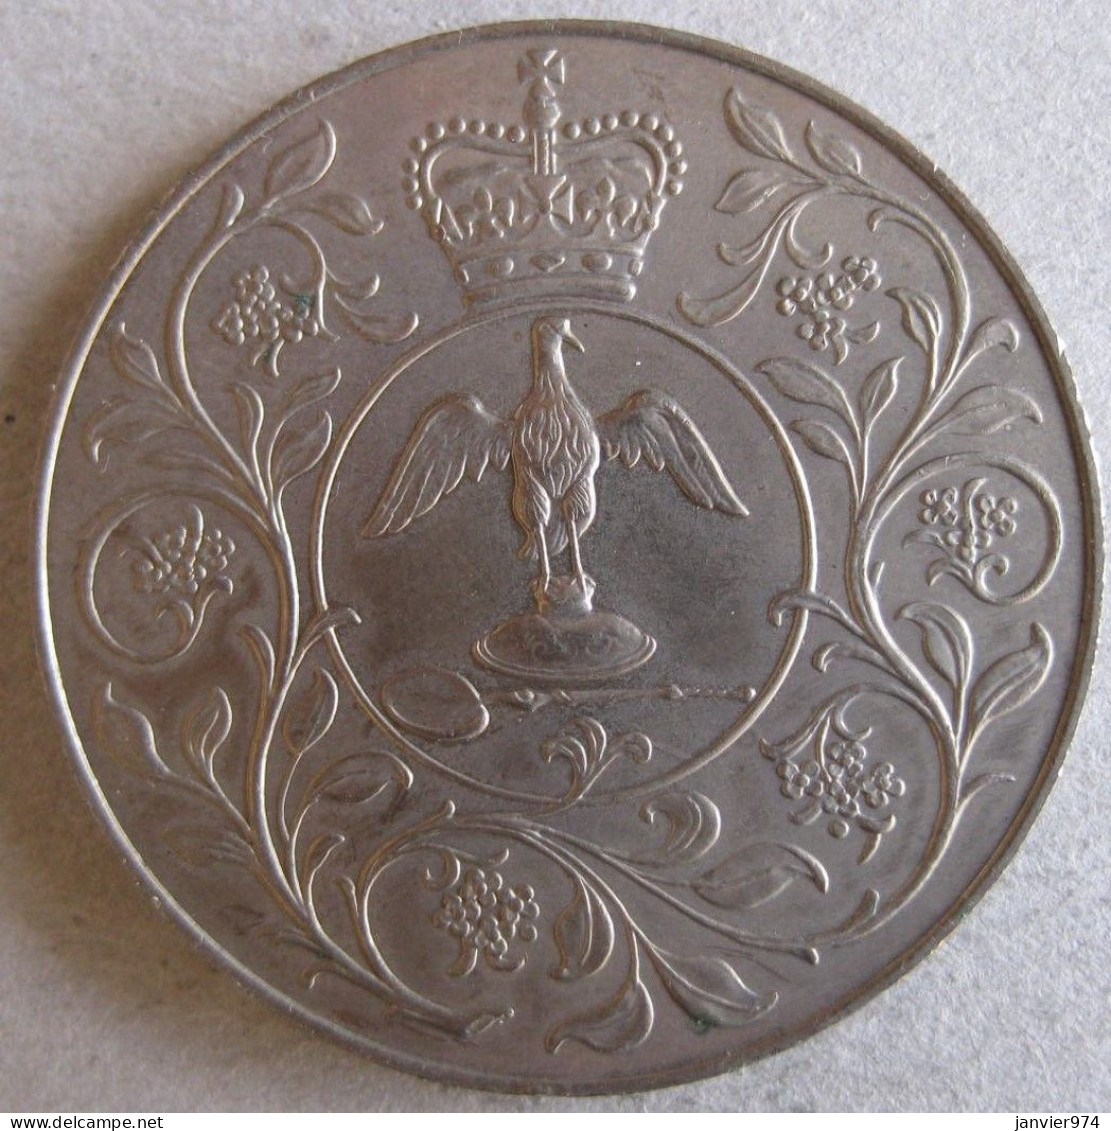 Royaume Unie Médaille Elizabeth II 1977, Pour Son Jubilé D'argent De Règne , En Cupro Nickel. - Monarchia/ Nobiltà